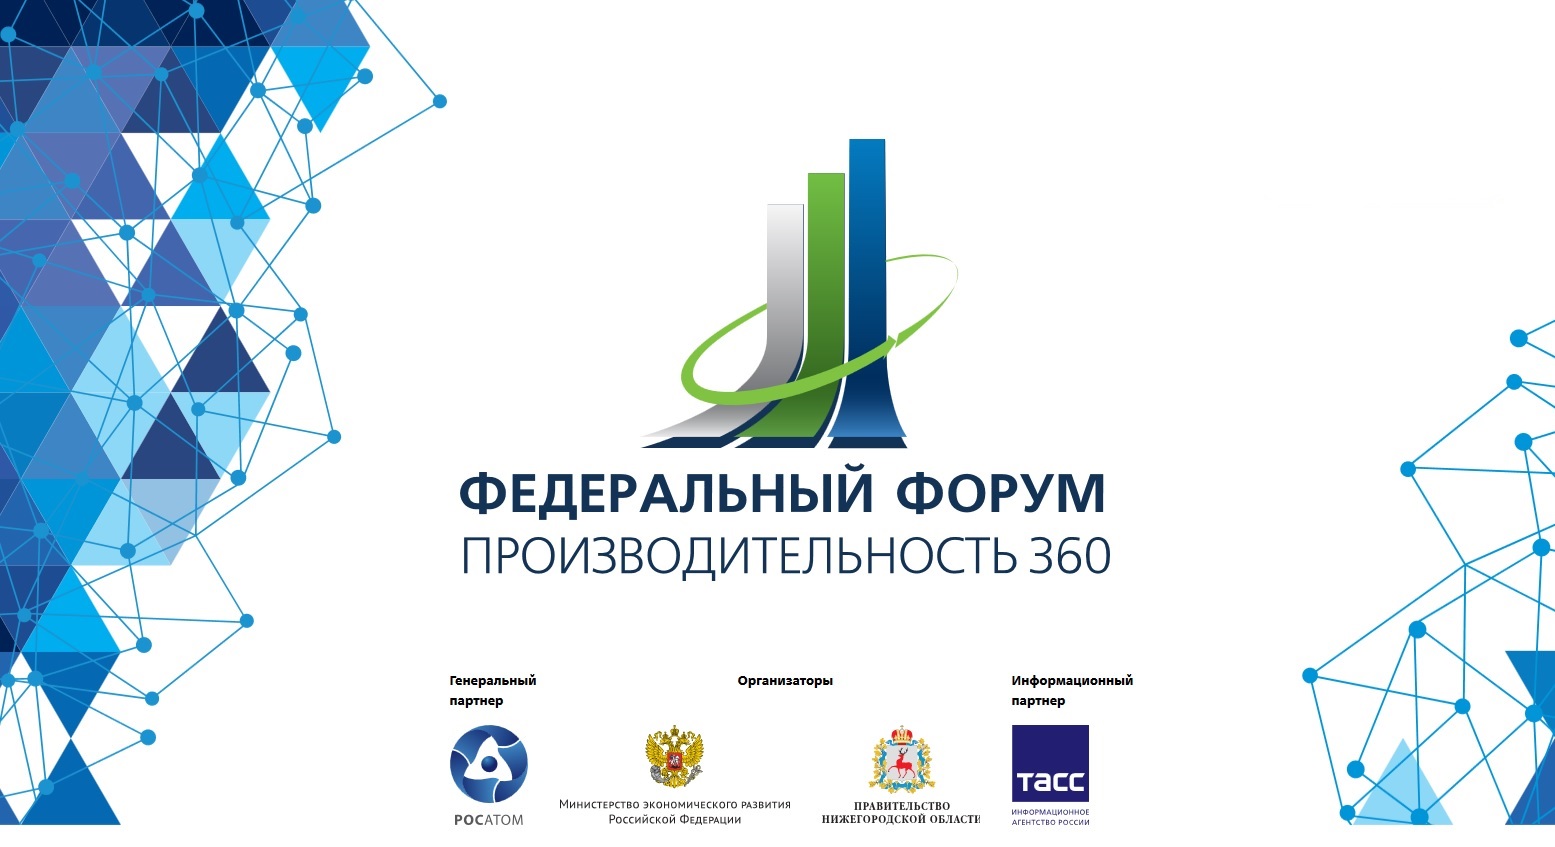 III Федеральный форум "Производительность 360" состоится 15 июня 